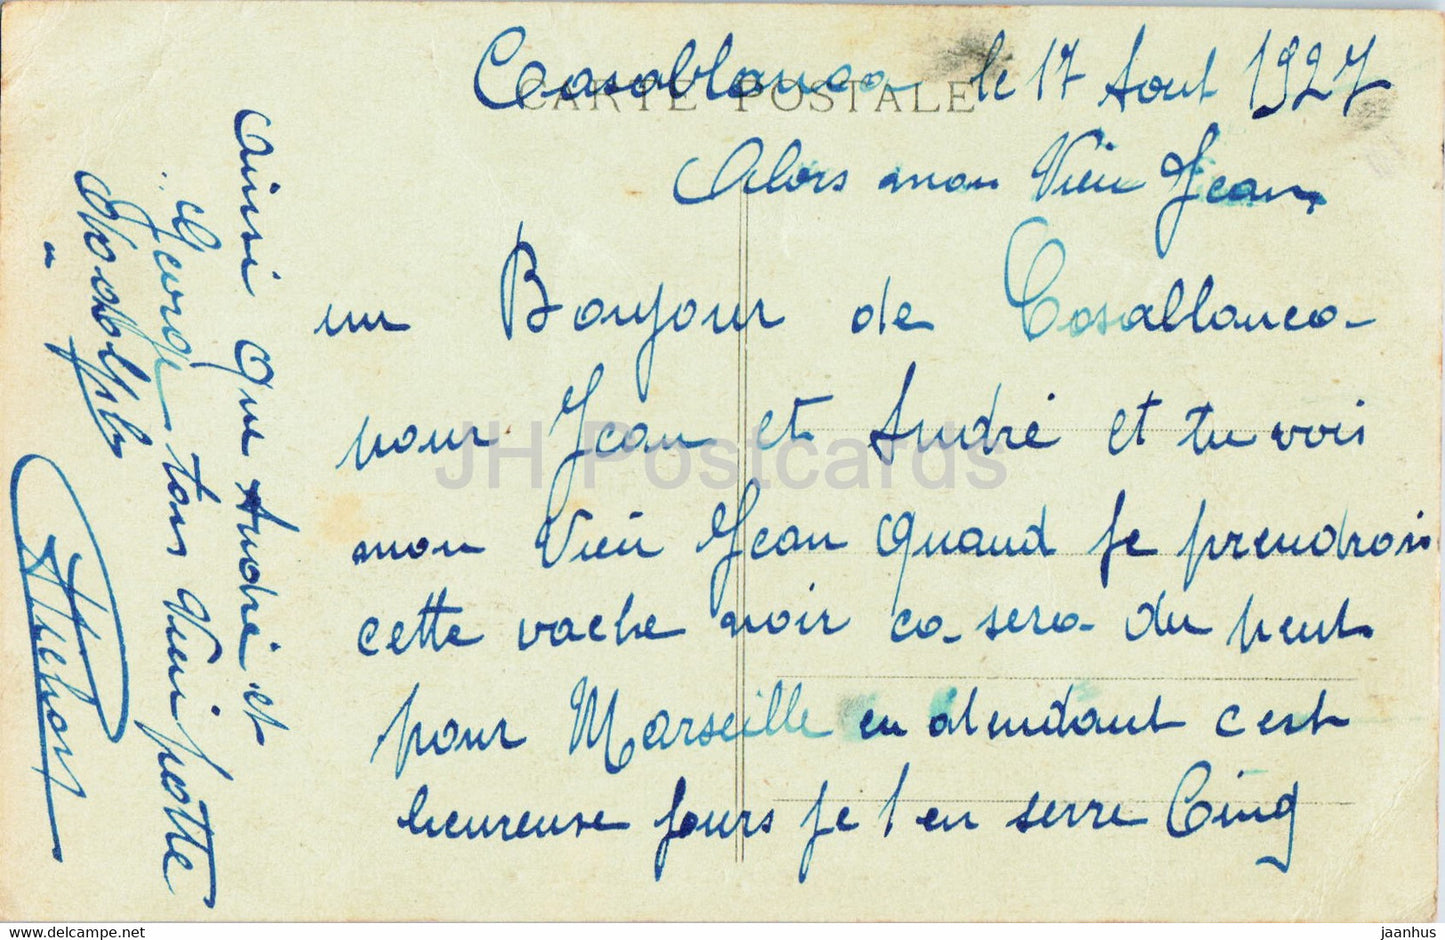 L'Anfa - Courrier de Marseille - Schiff - Dampfer - 163 - alte Postkarte - 1927 - Frankreich - gebraucht